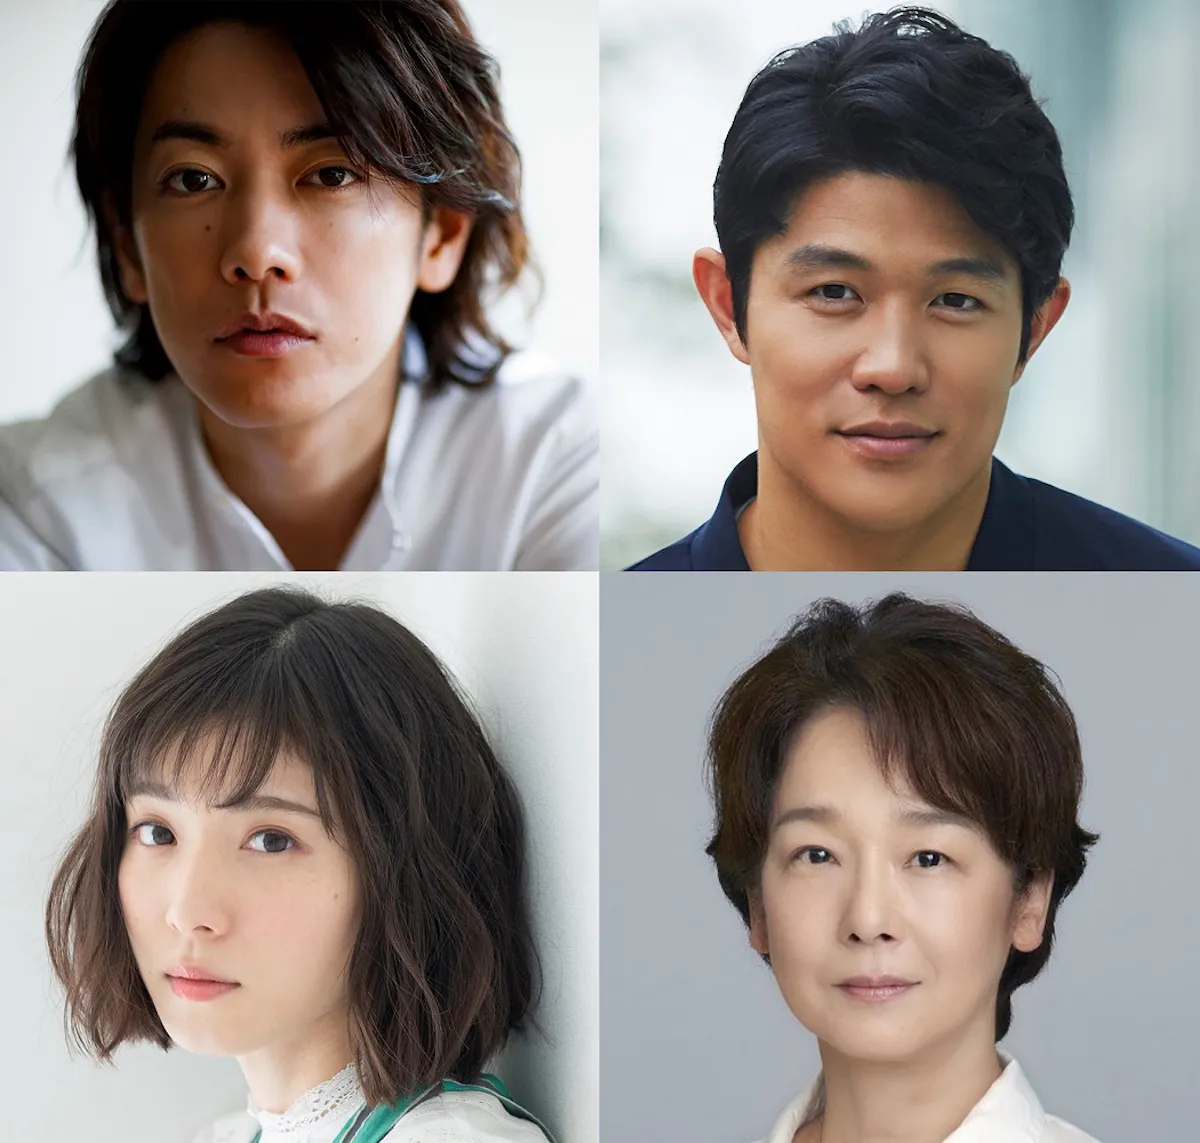 映画「ひとよ」に出演する、佐藤健、鈴木亮平、田中裕子、松岡茉優(左上から時計回り)